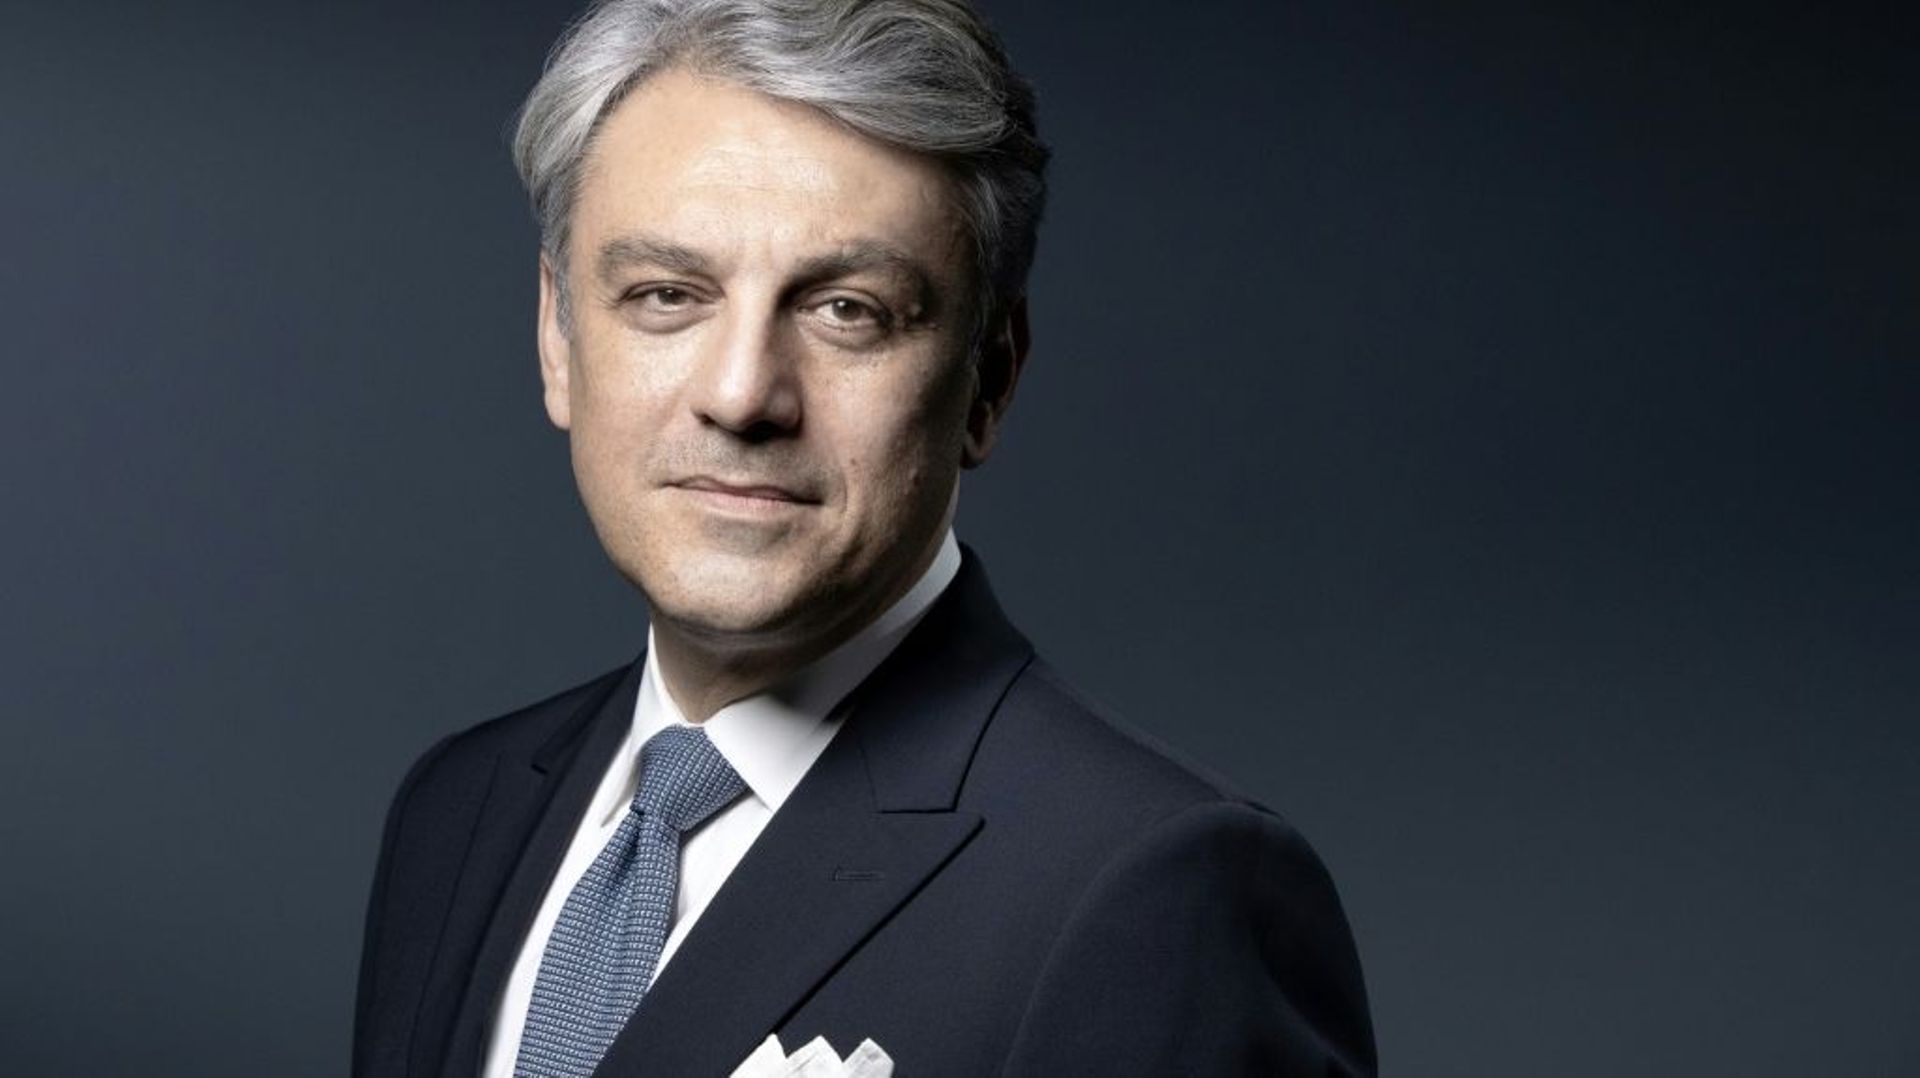 Le nouveau directeur général de Renault, Luca de Meo, le 7 juillet 2020 à Paris